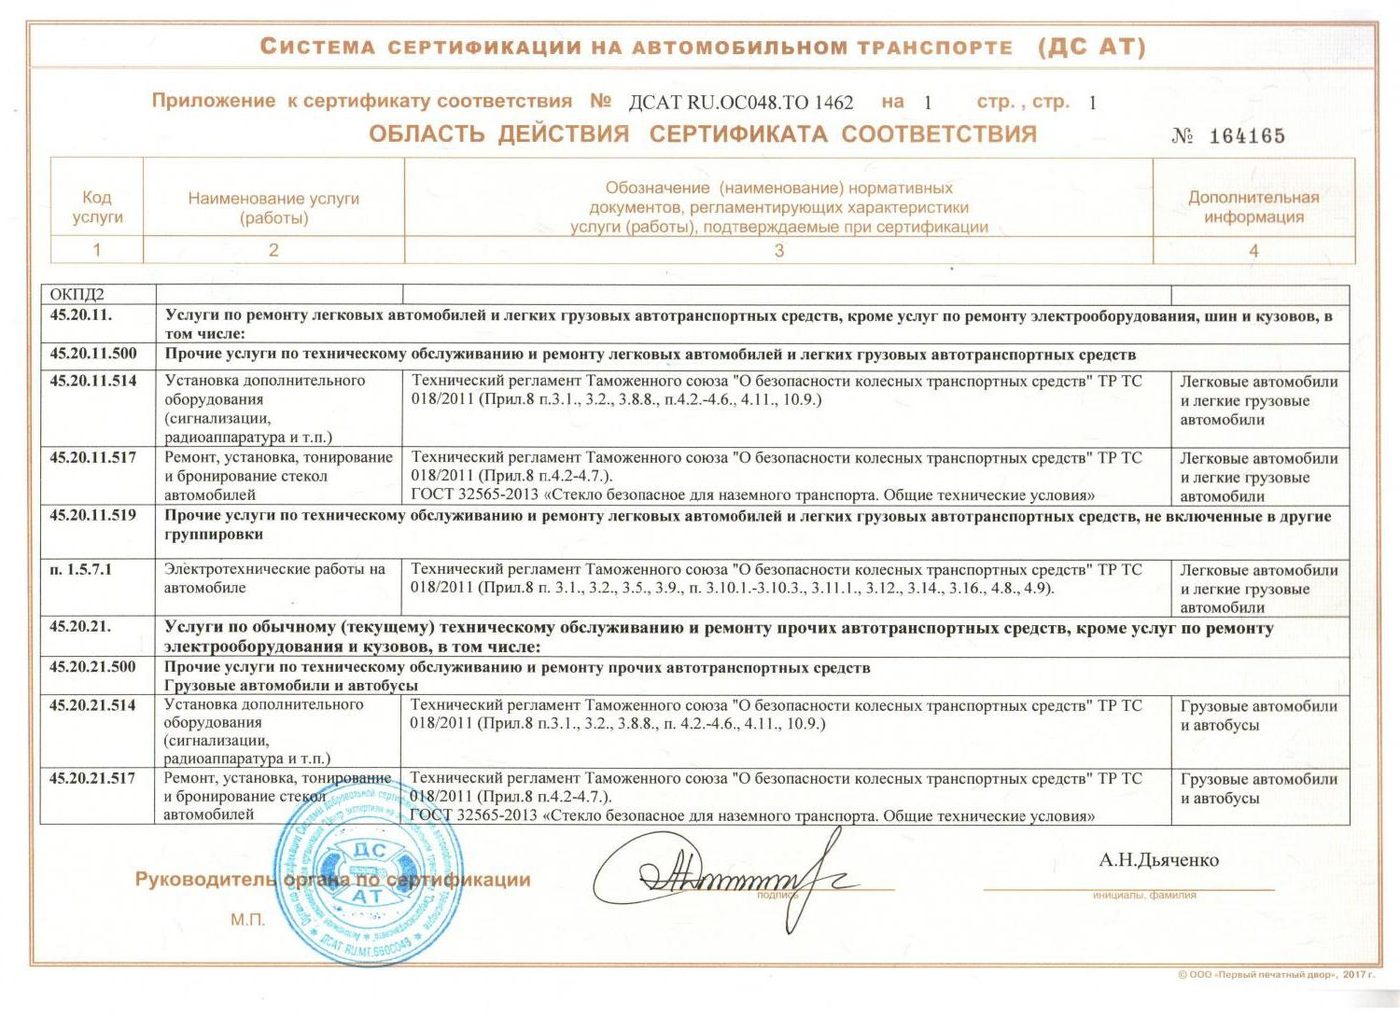 Сертификат ДС АТ - документ подтверждающий квалификацию установочного центра